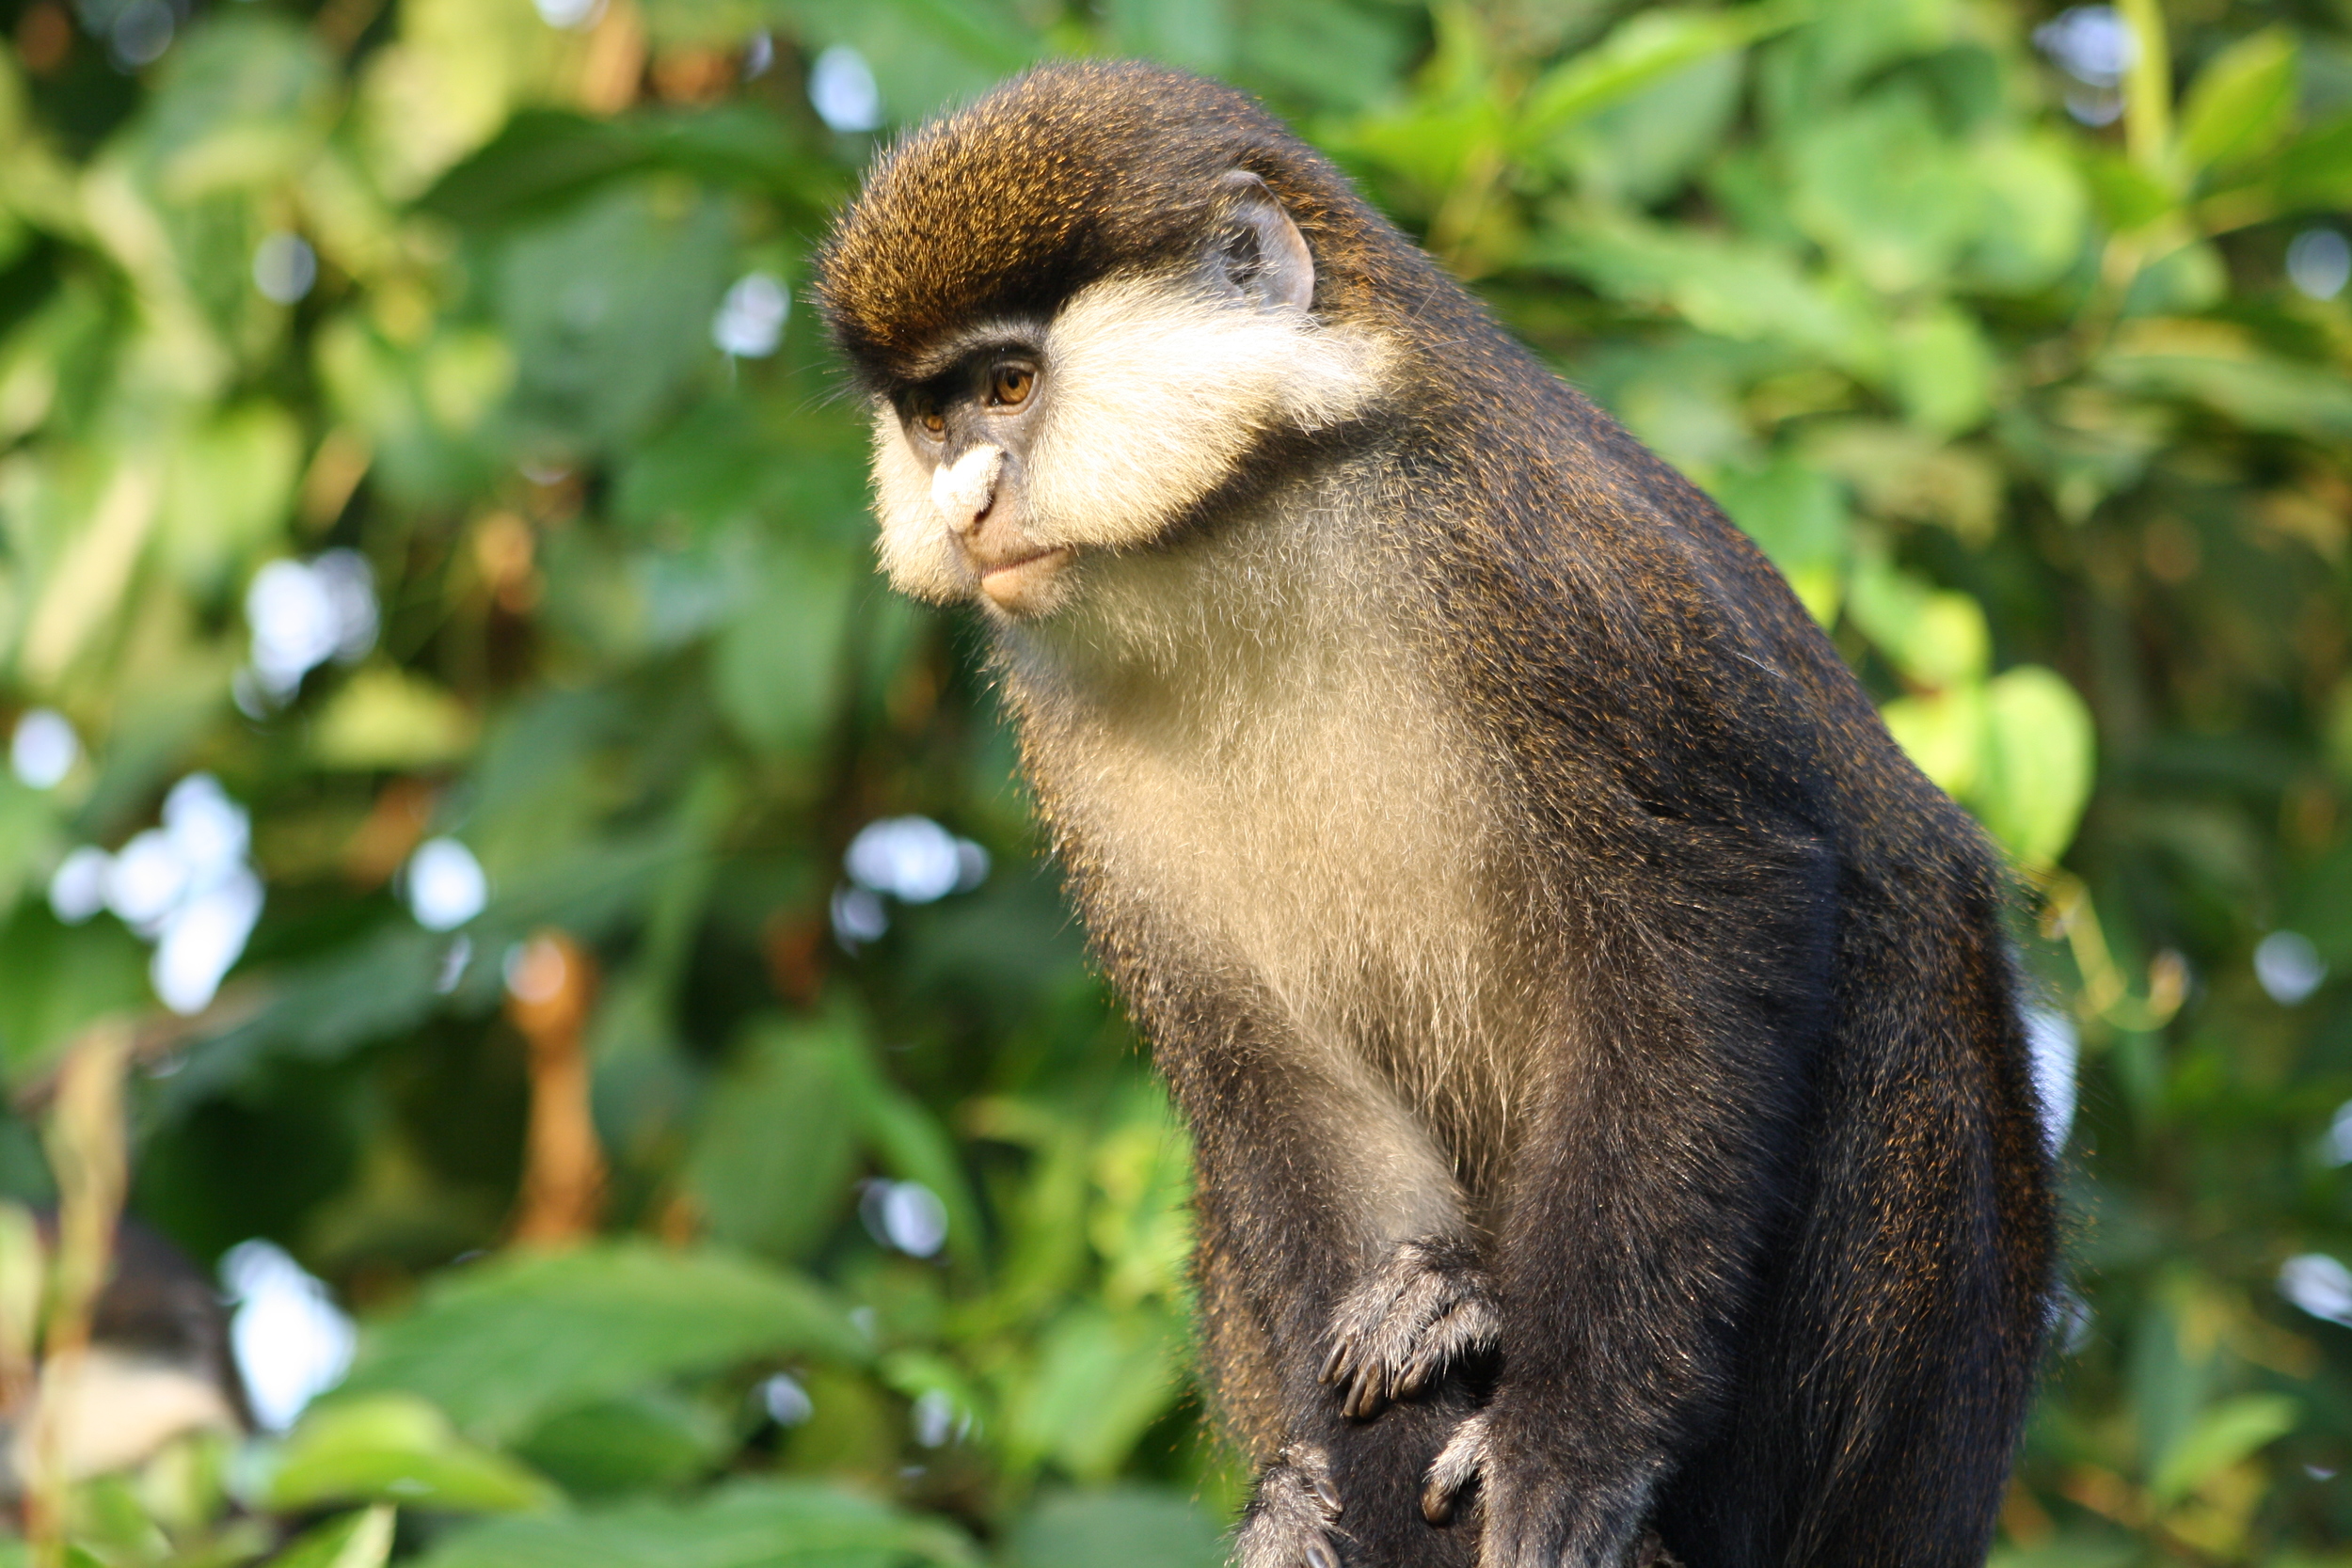  Red-tailed monkey ( Cercopithecus ascanius ), Buhoma, Uganda 